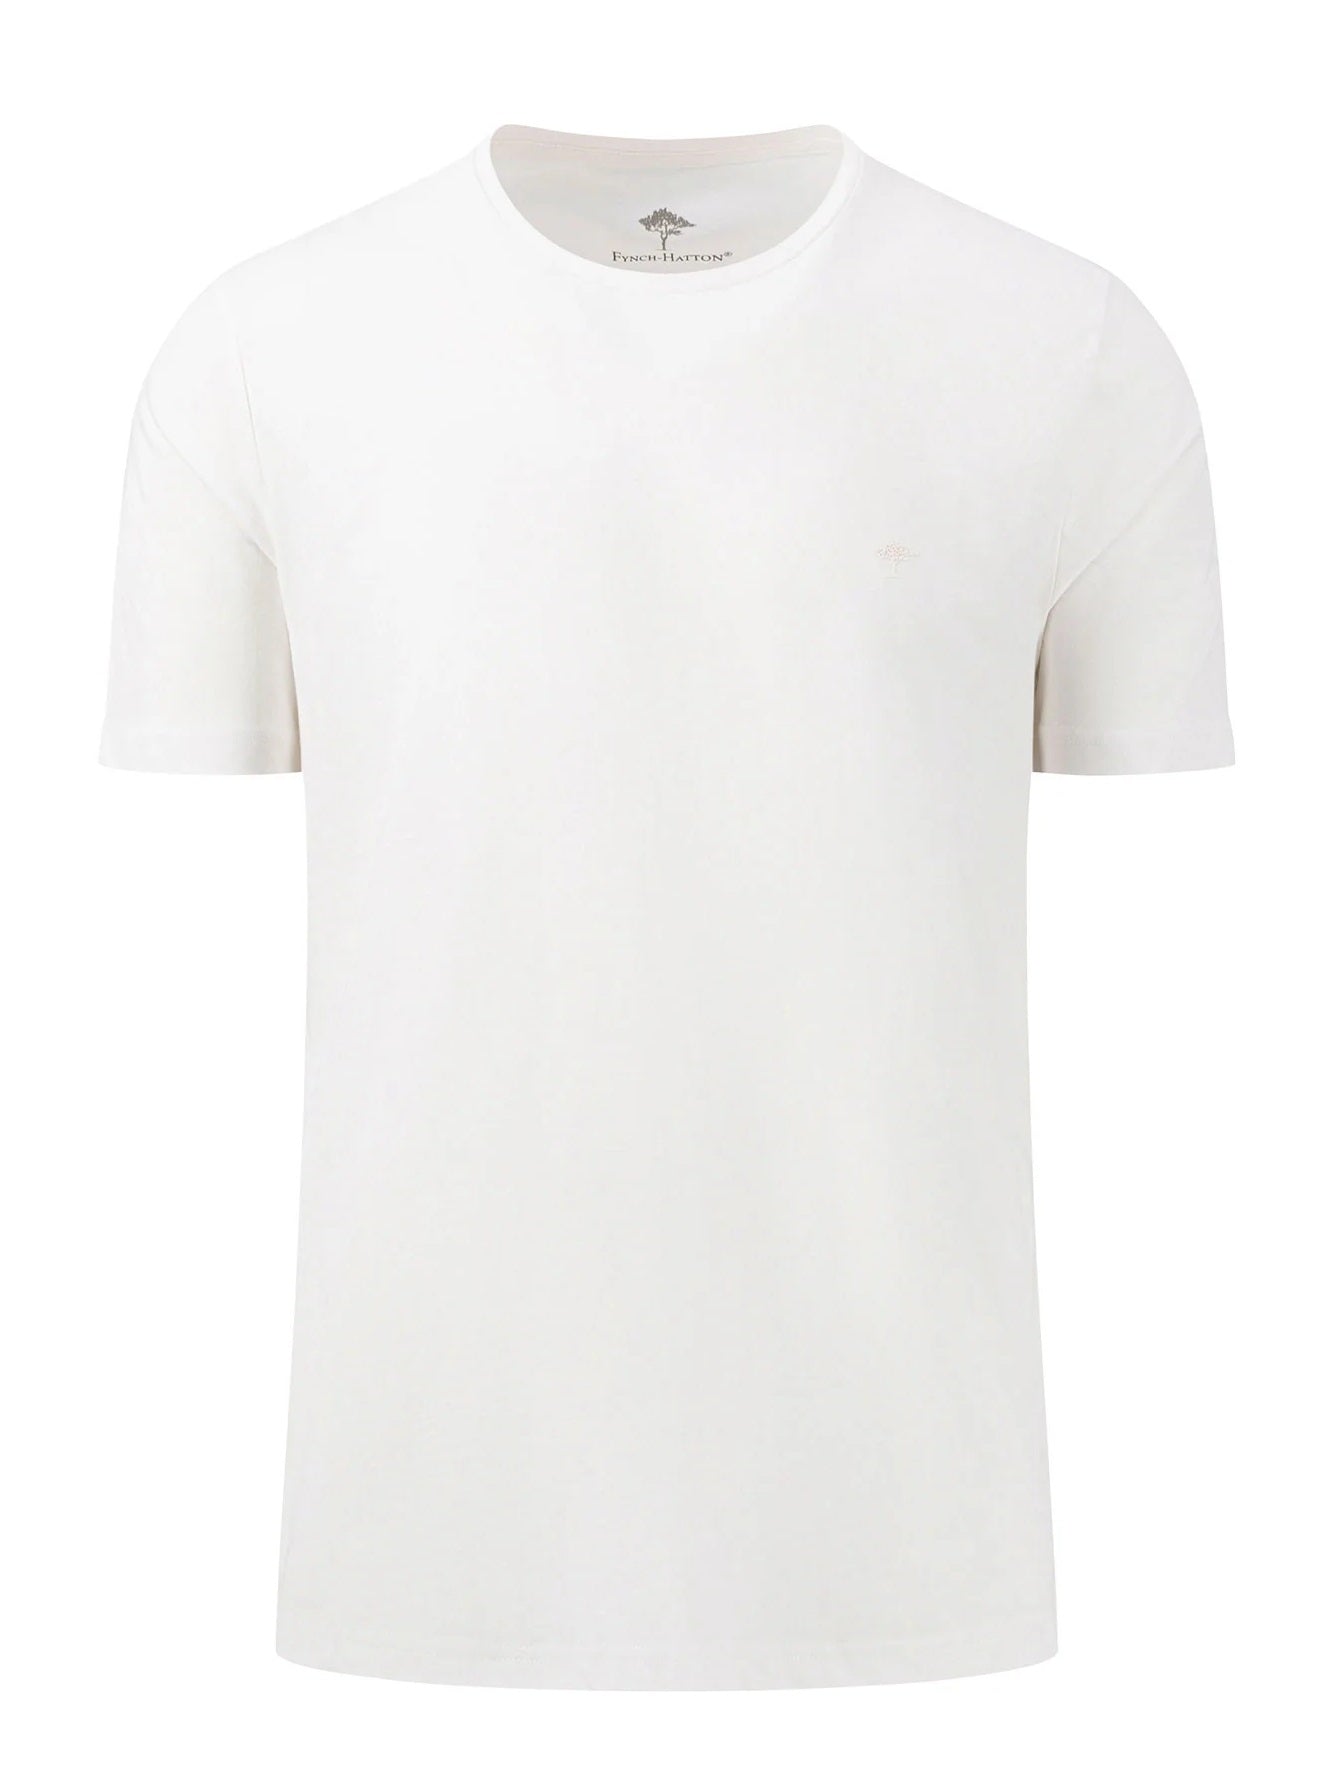 FYNCH HATTON T-Shirt - Men's Round Neck – White